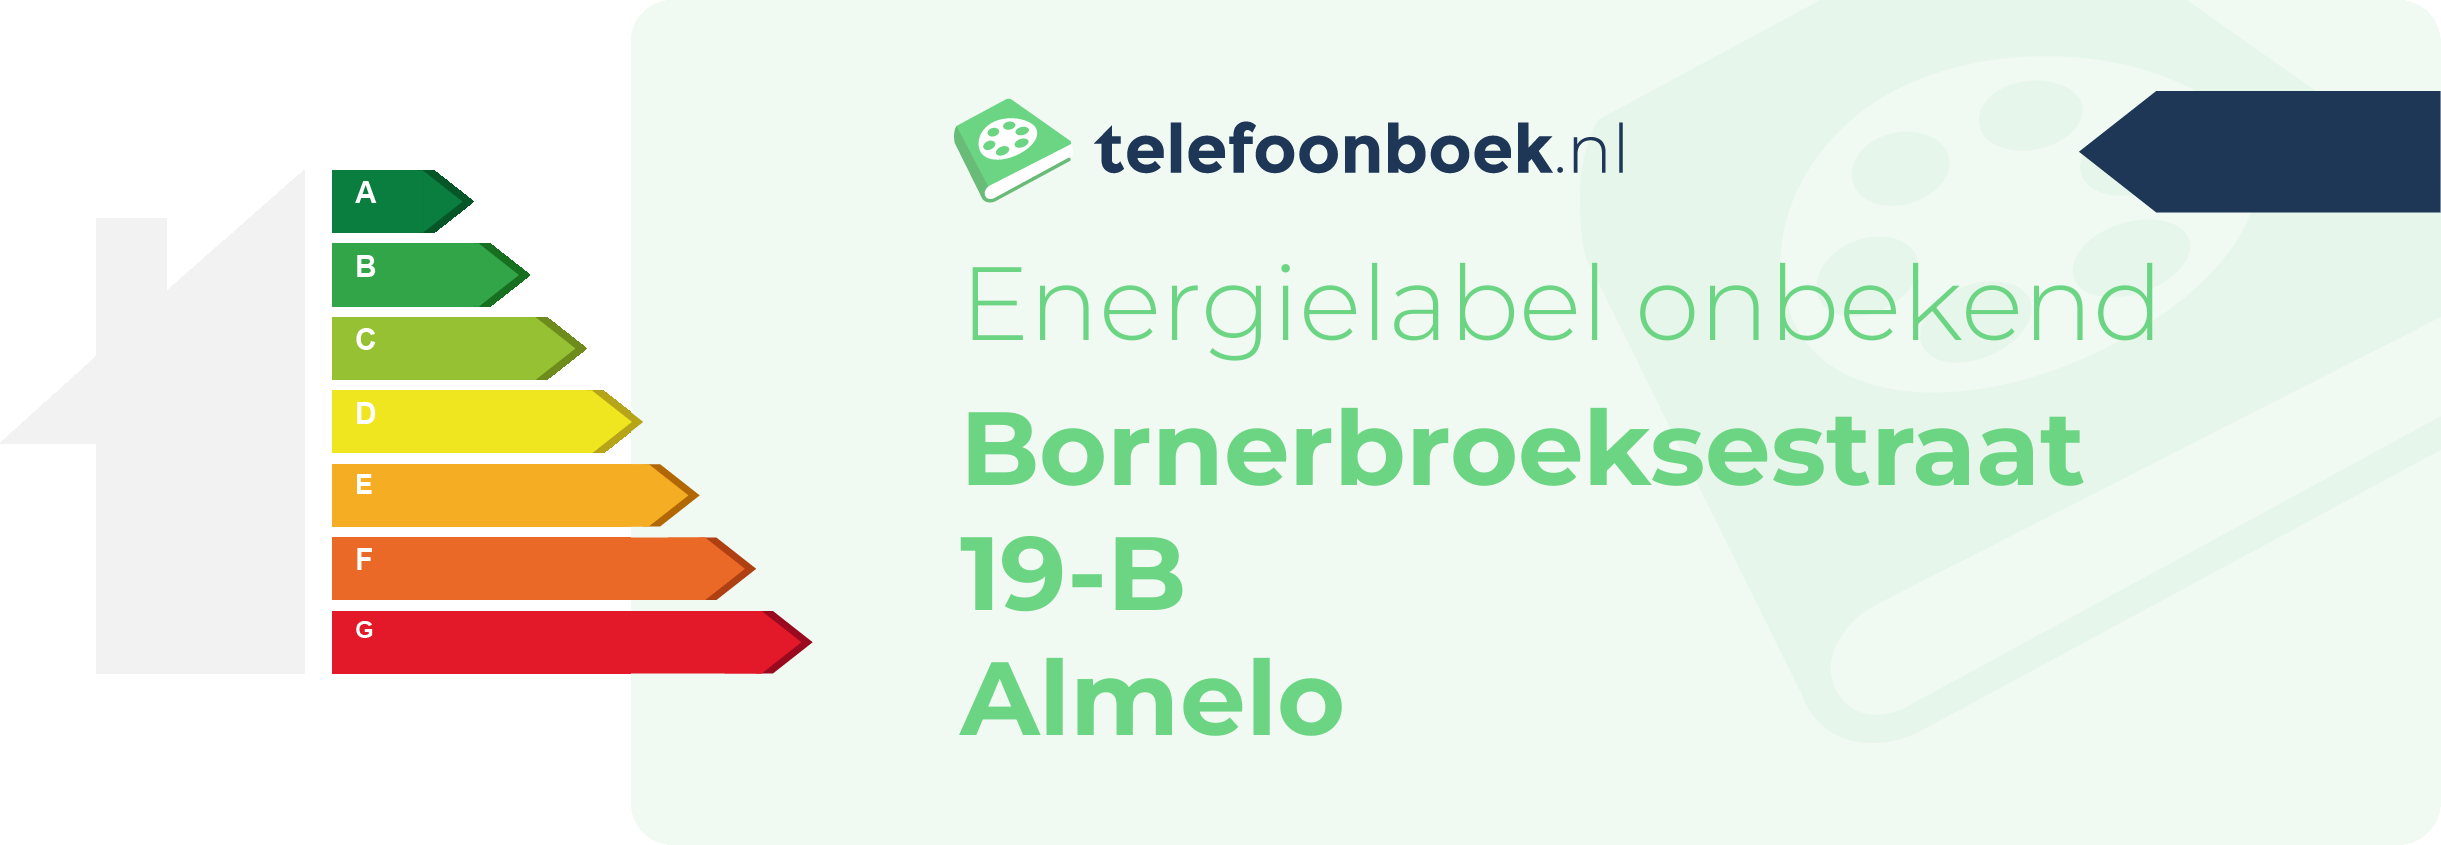 Energielabel Bornerbroeksestraat 19-B Almelo